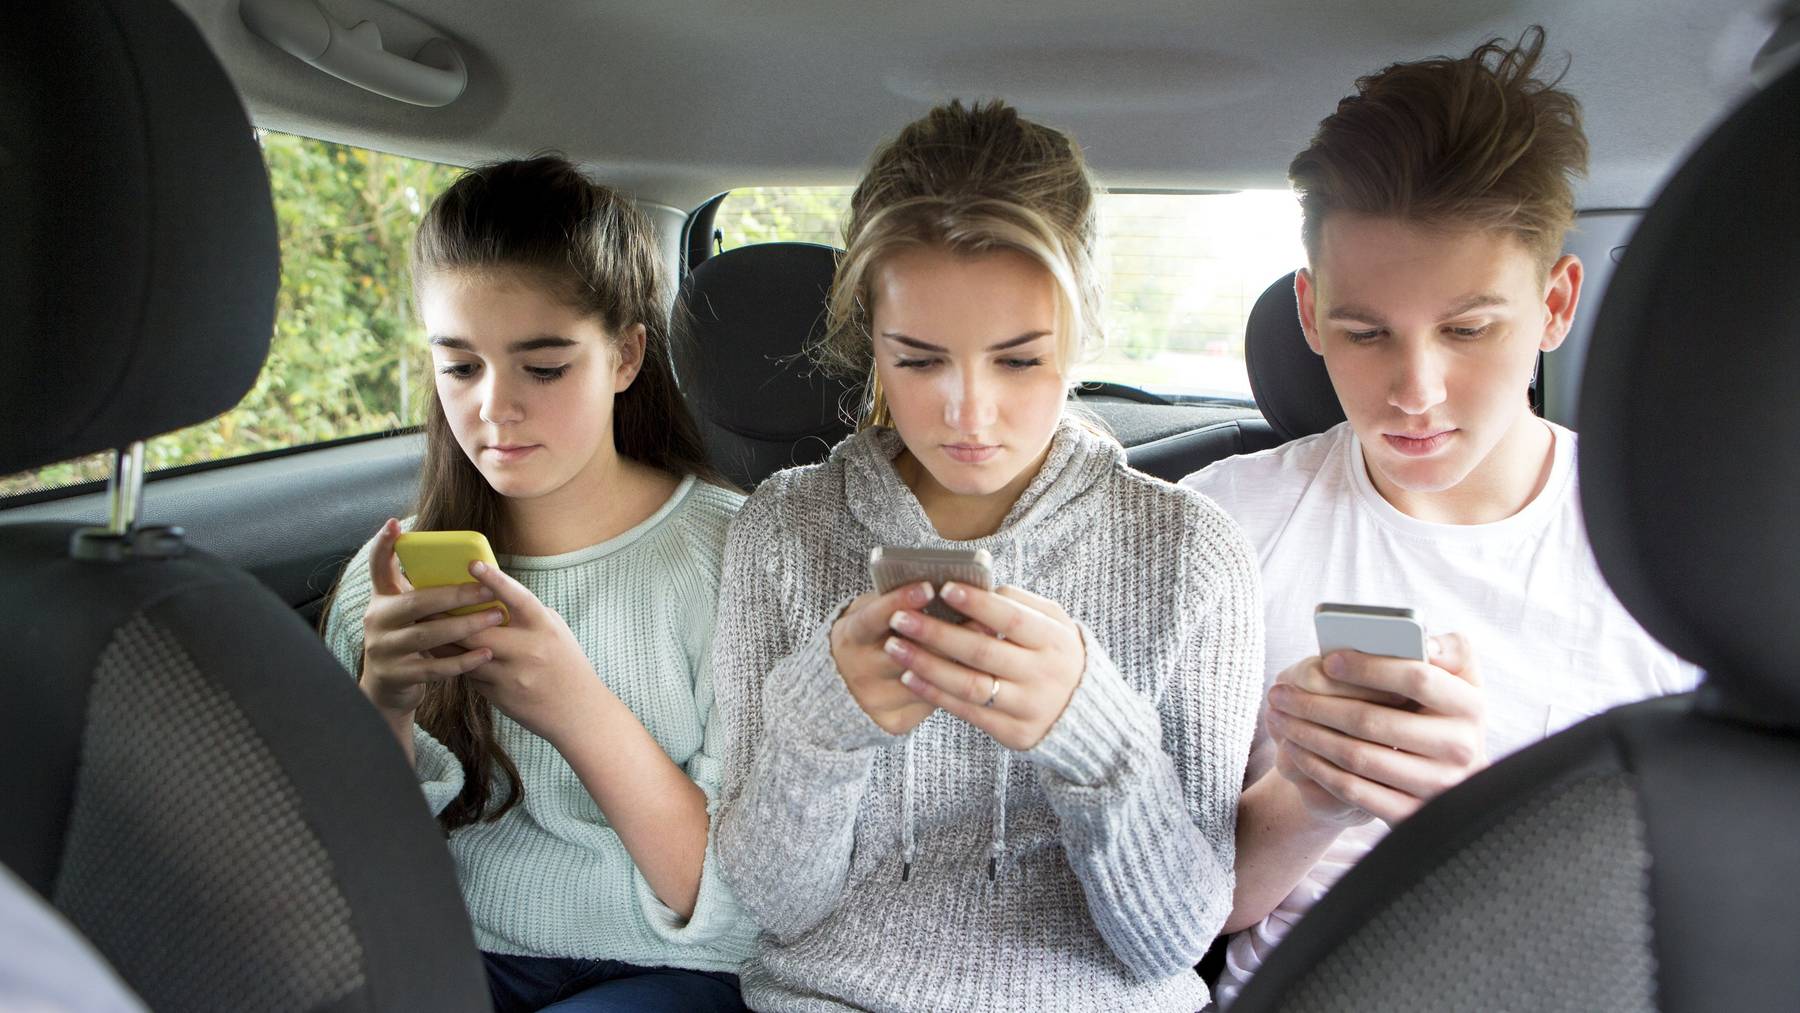 Diese Teenager haben nur Augen für ihr Smartphone –  dabei müssten sie sich anschnallen und, je nach Land, auf eine Erhöhung setzen. (Symbolbild)